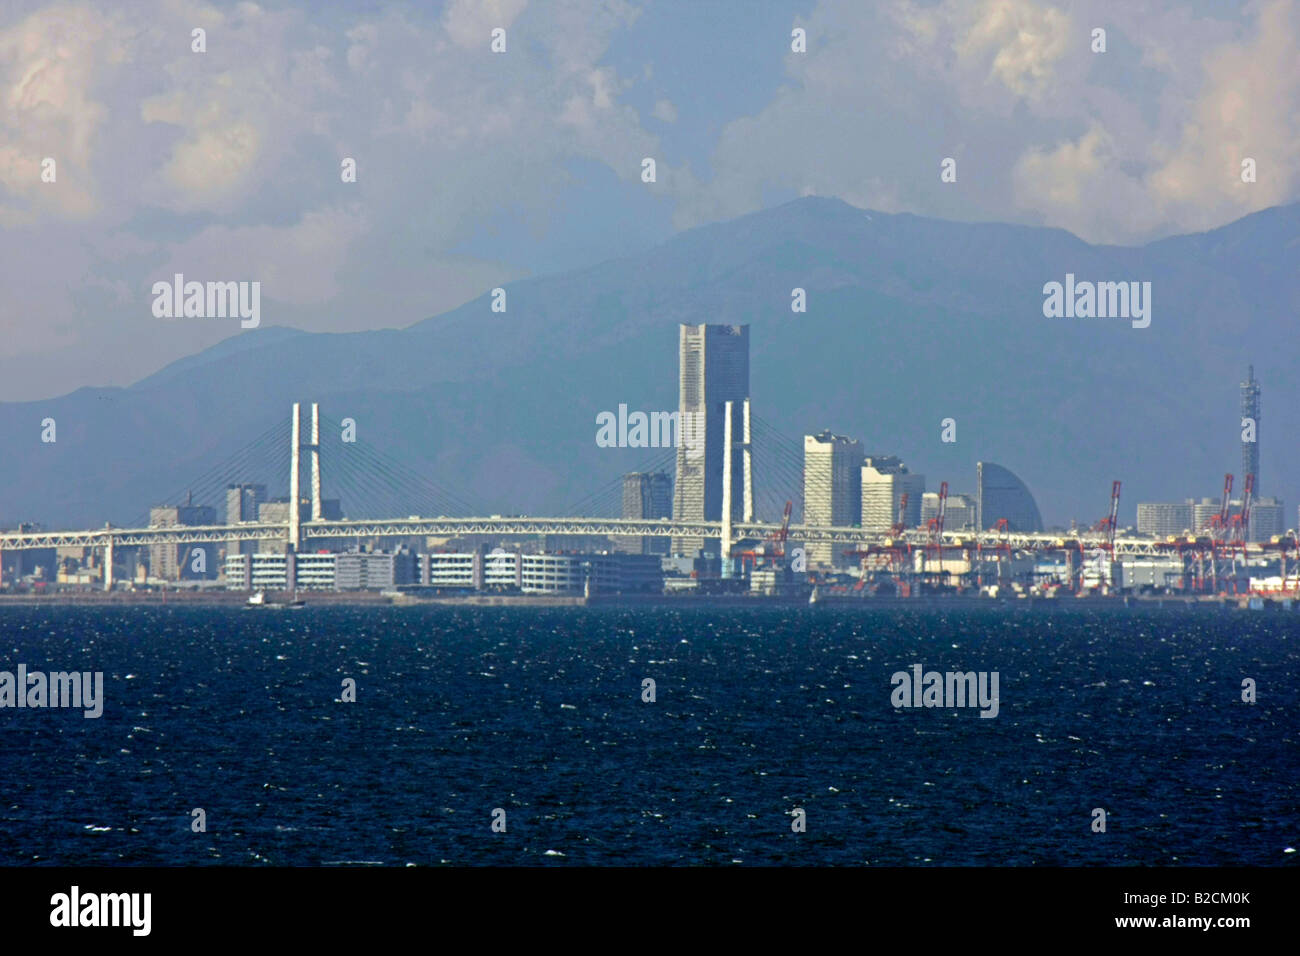 Le Bay Bridge et ville de Yokohama vue depuis la baie de Tokyo au Japon Banque D'Images